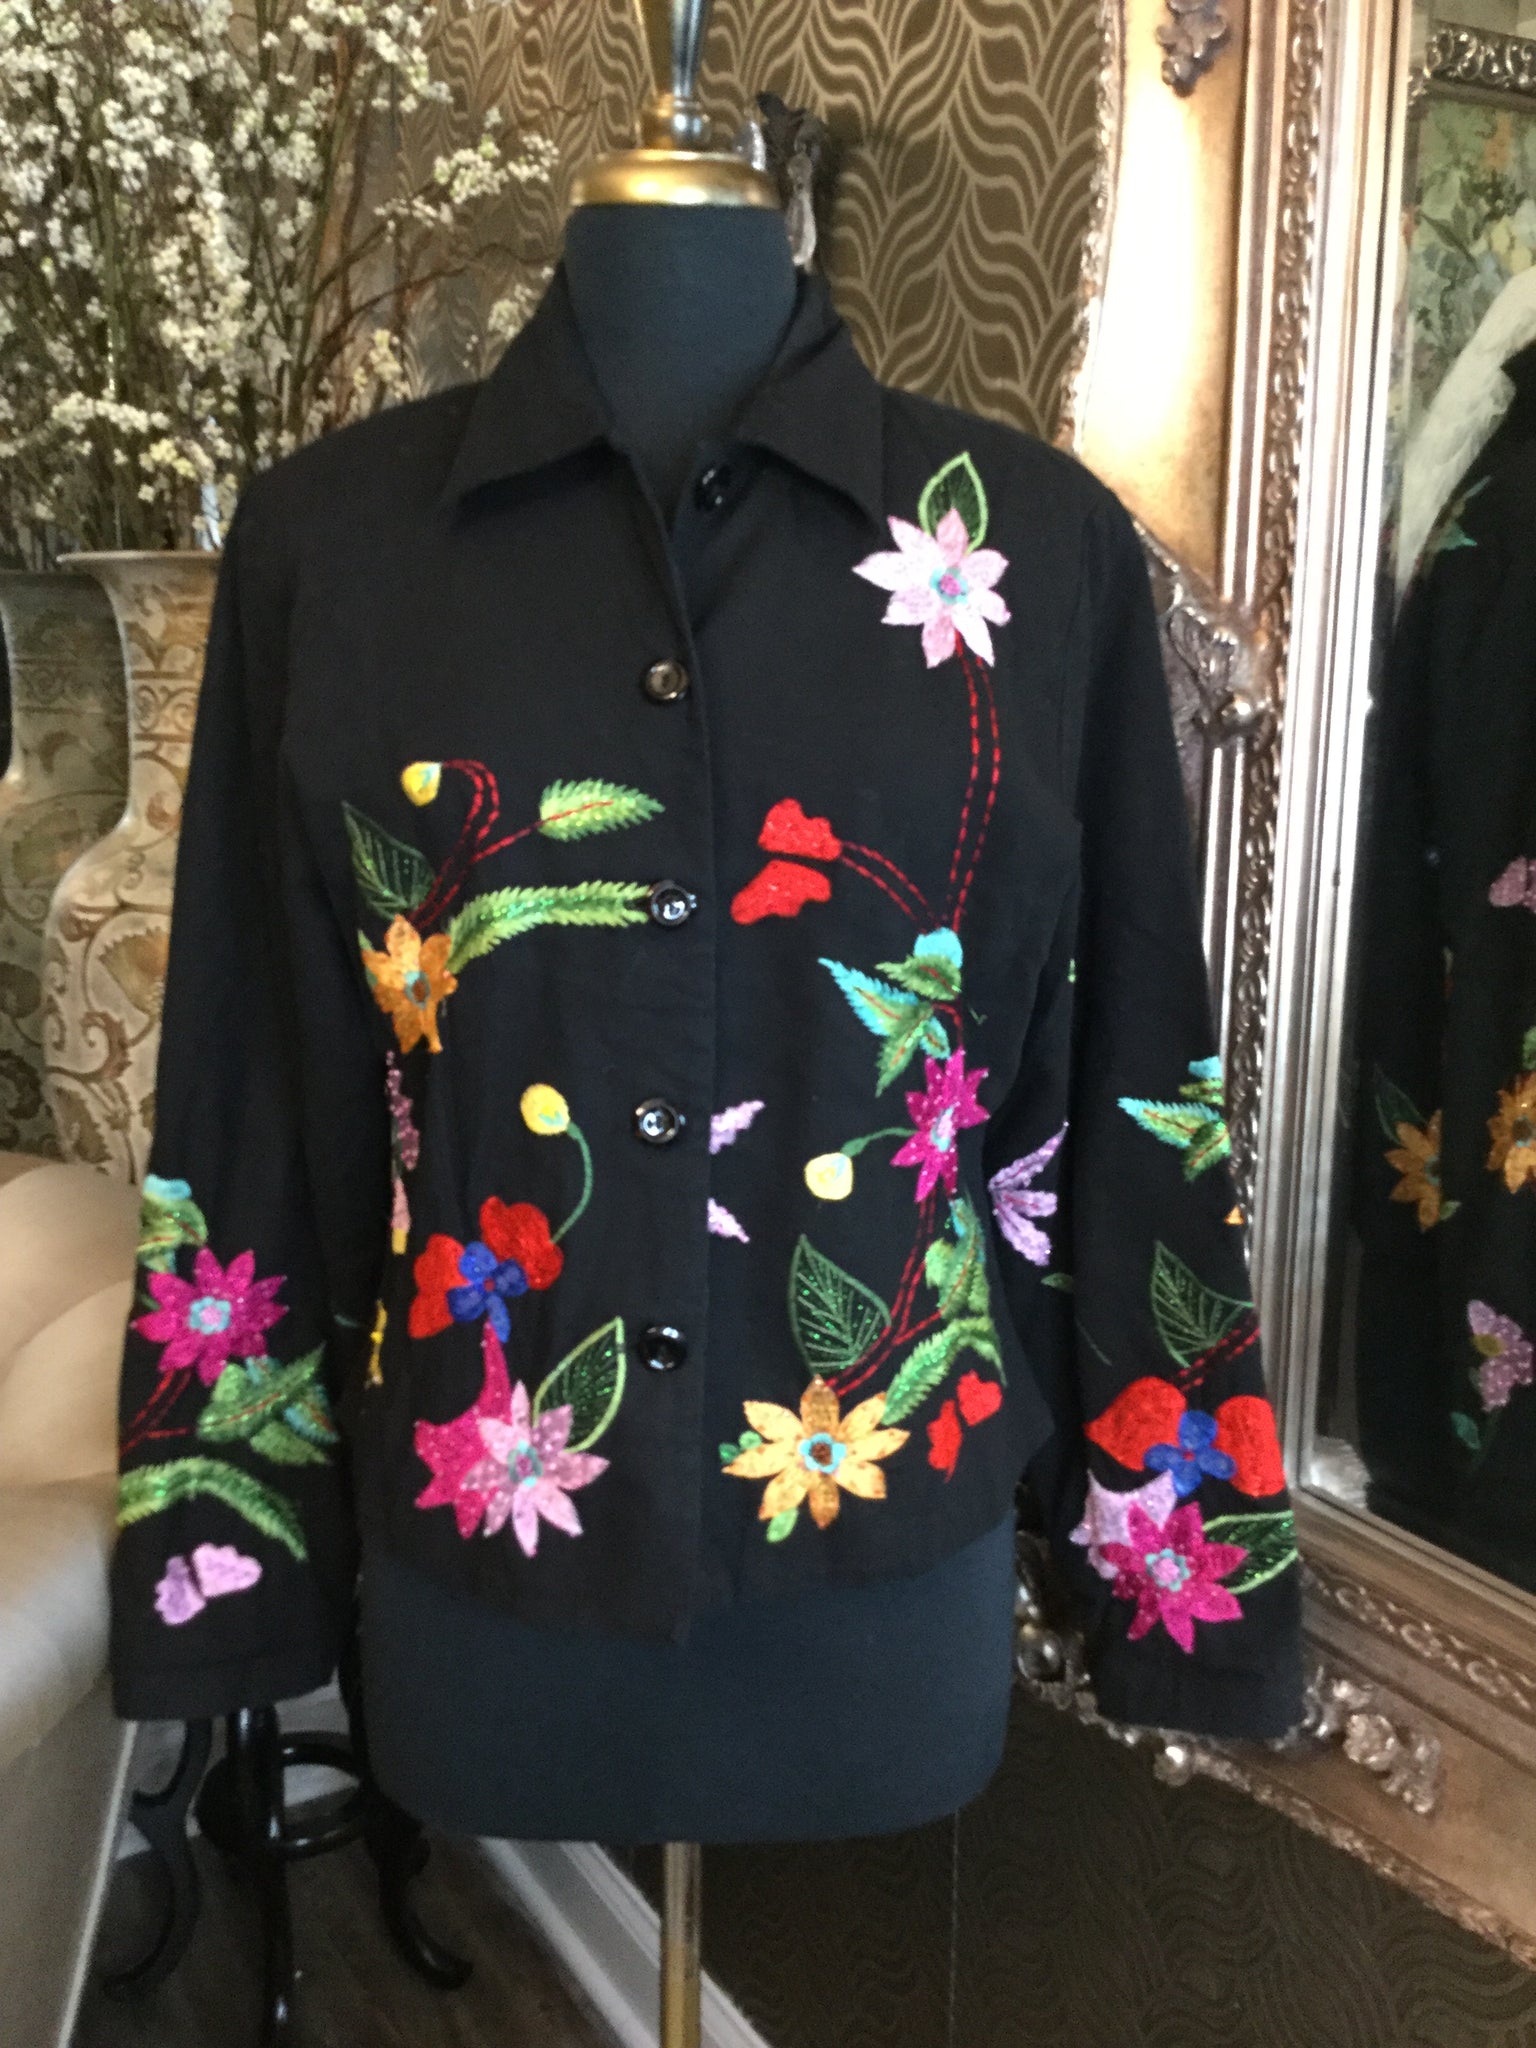 Vintage black embroidery multi floral bead jacket